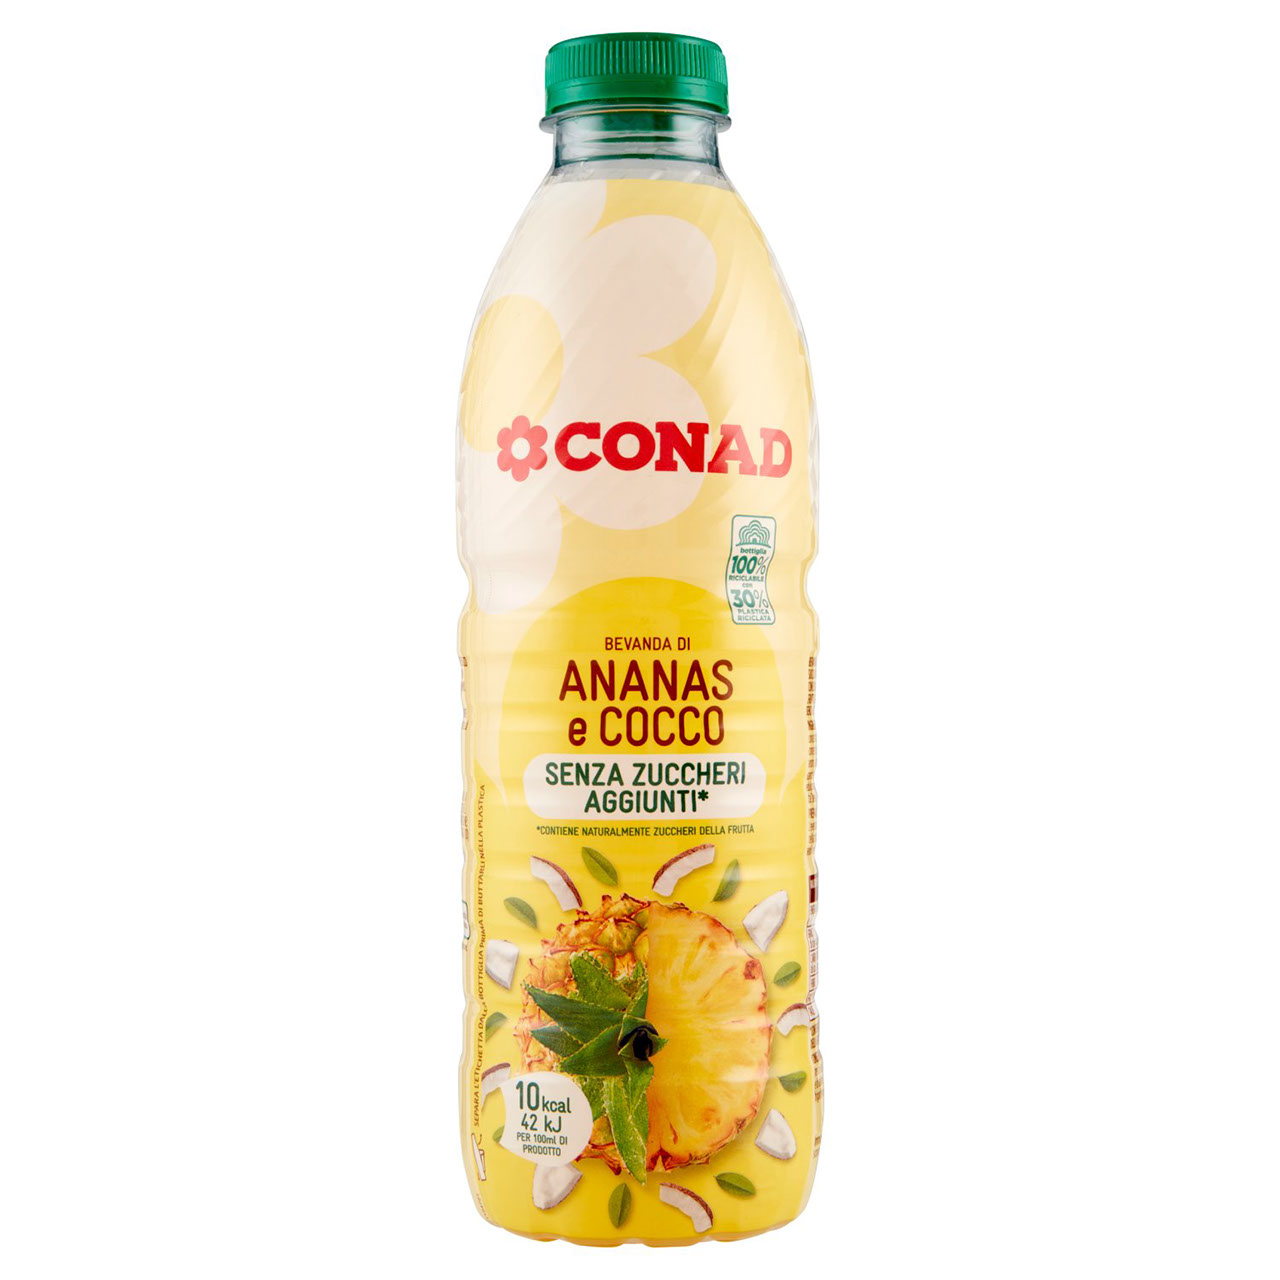 Bevanda di Ananas e Cocco Conad in vendita online